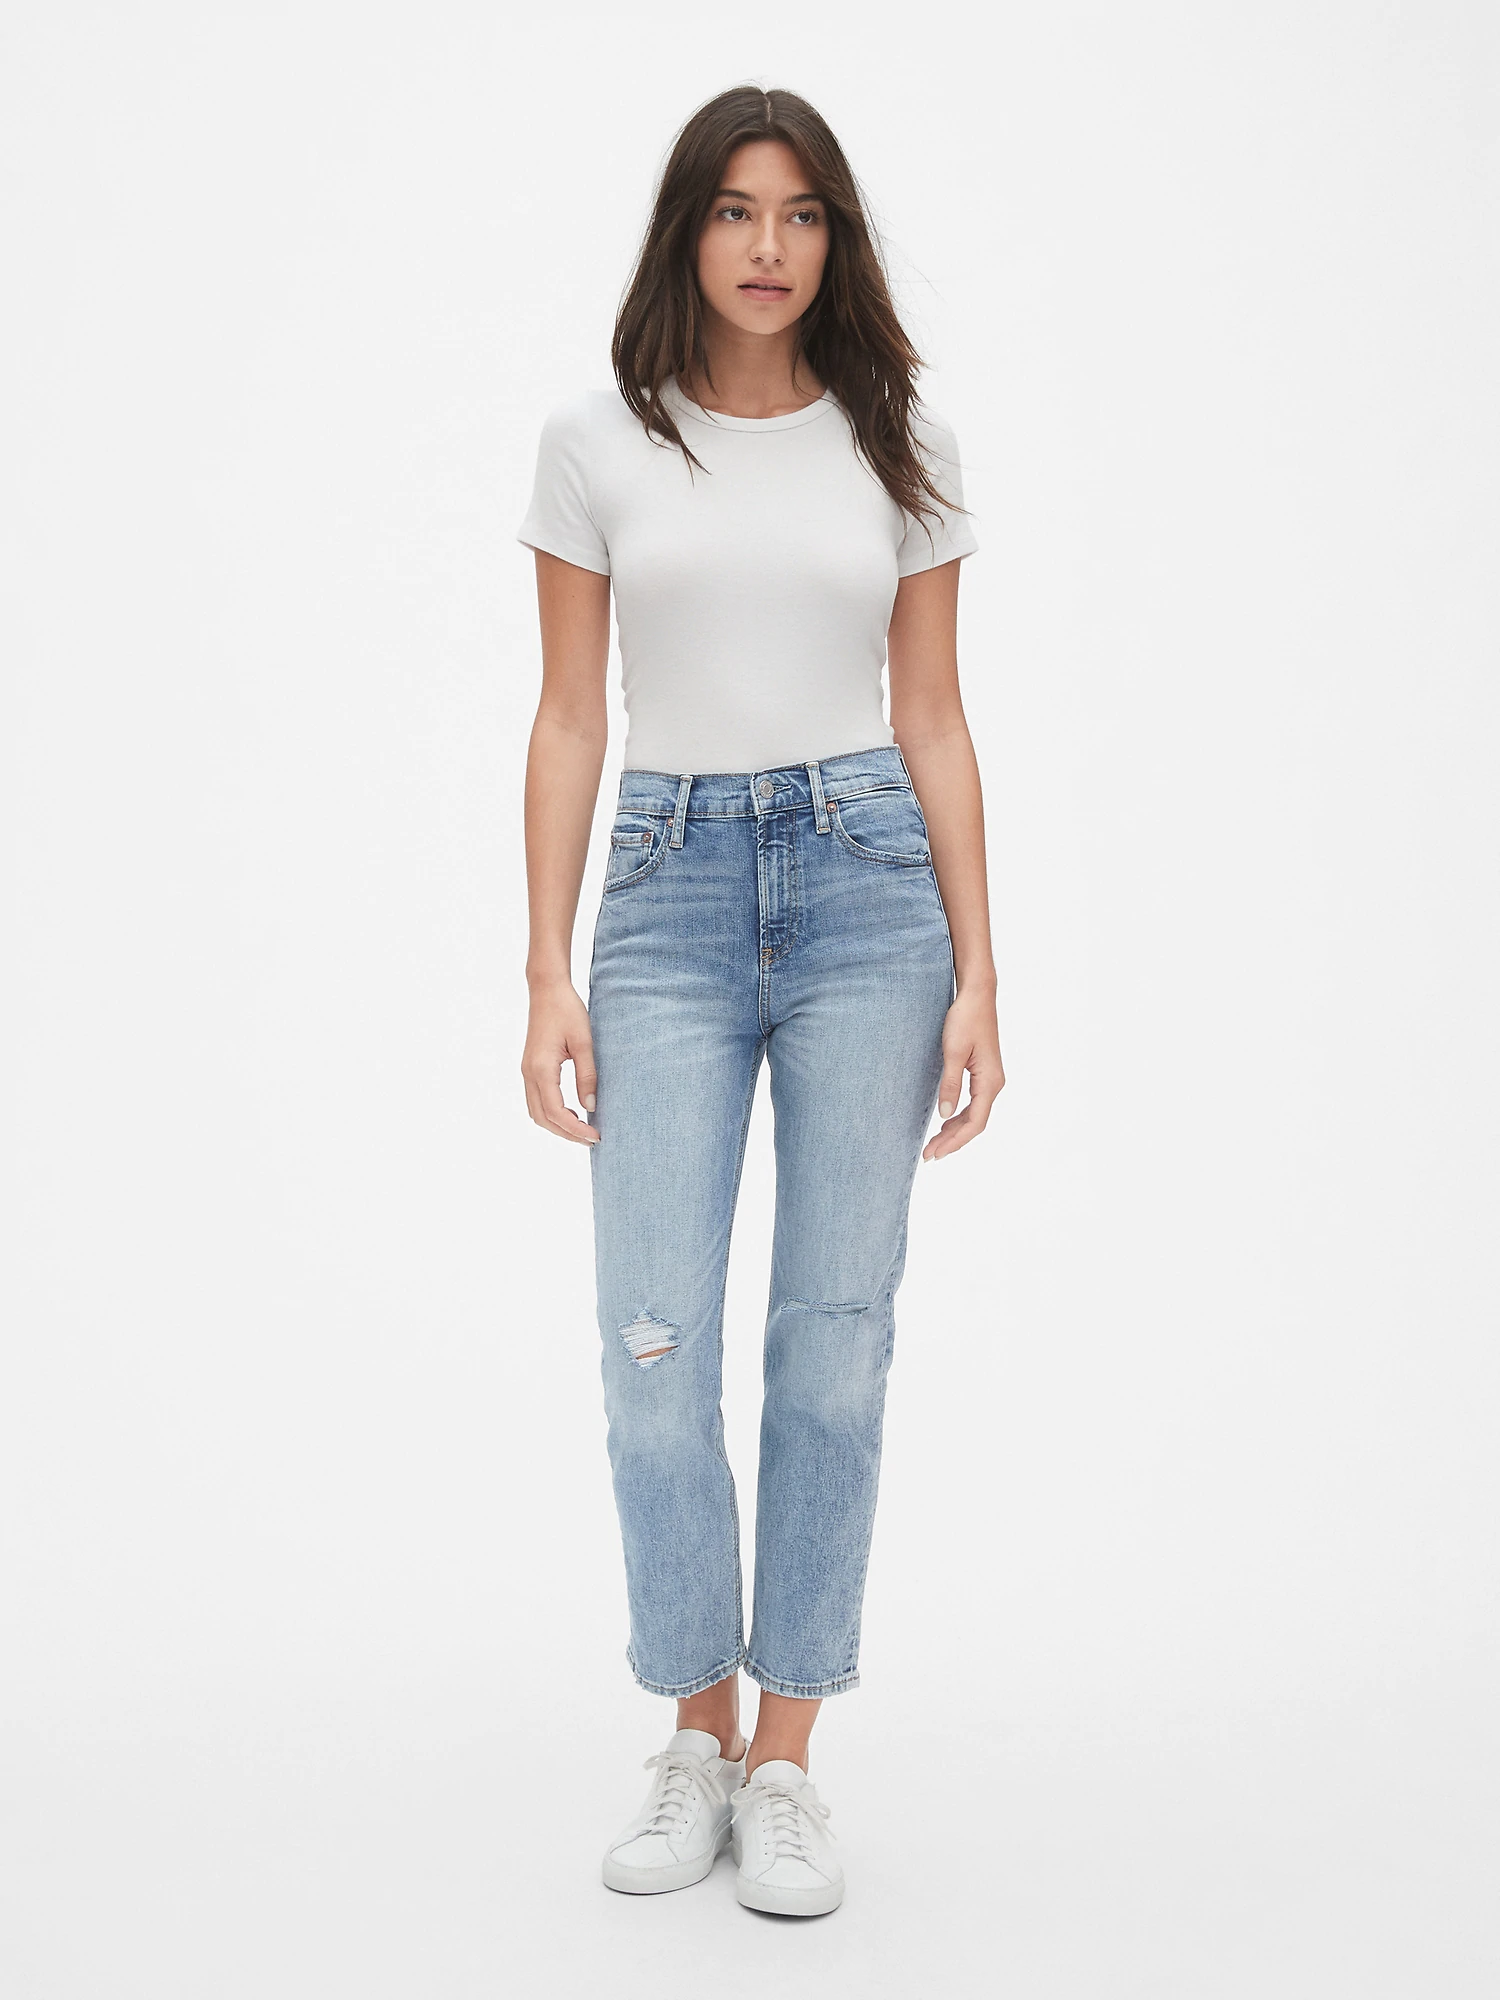 Ajustamiento Gimnasia Lidiar con Qué son los Straight Jean y cómo usarlos — Project Glam